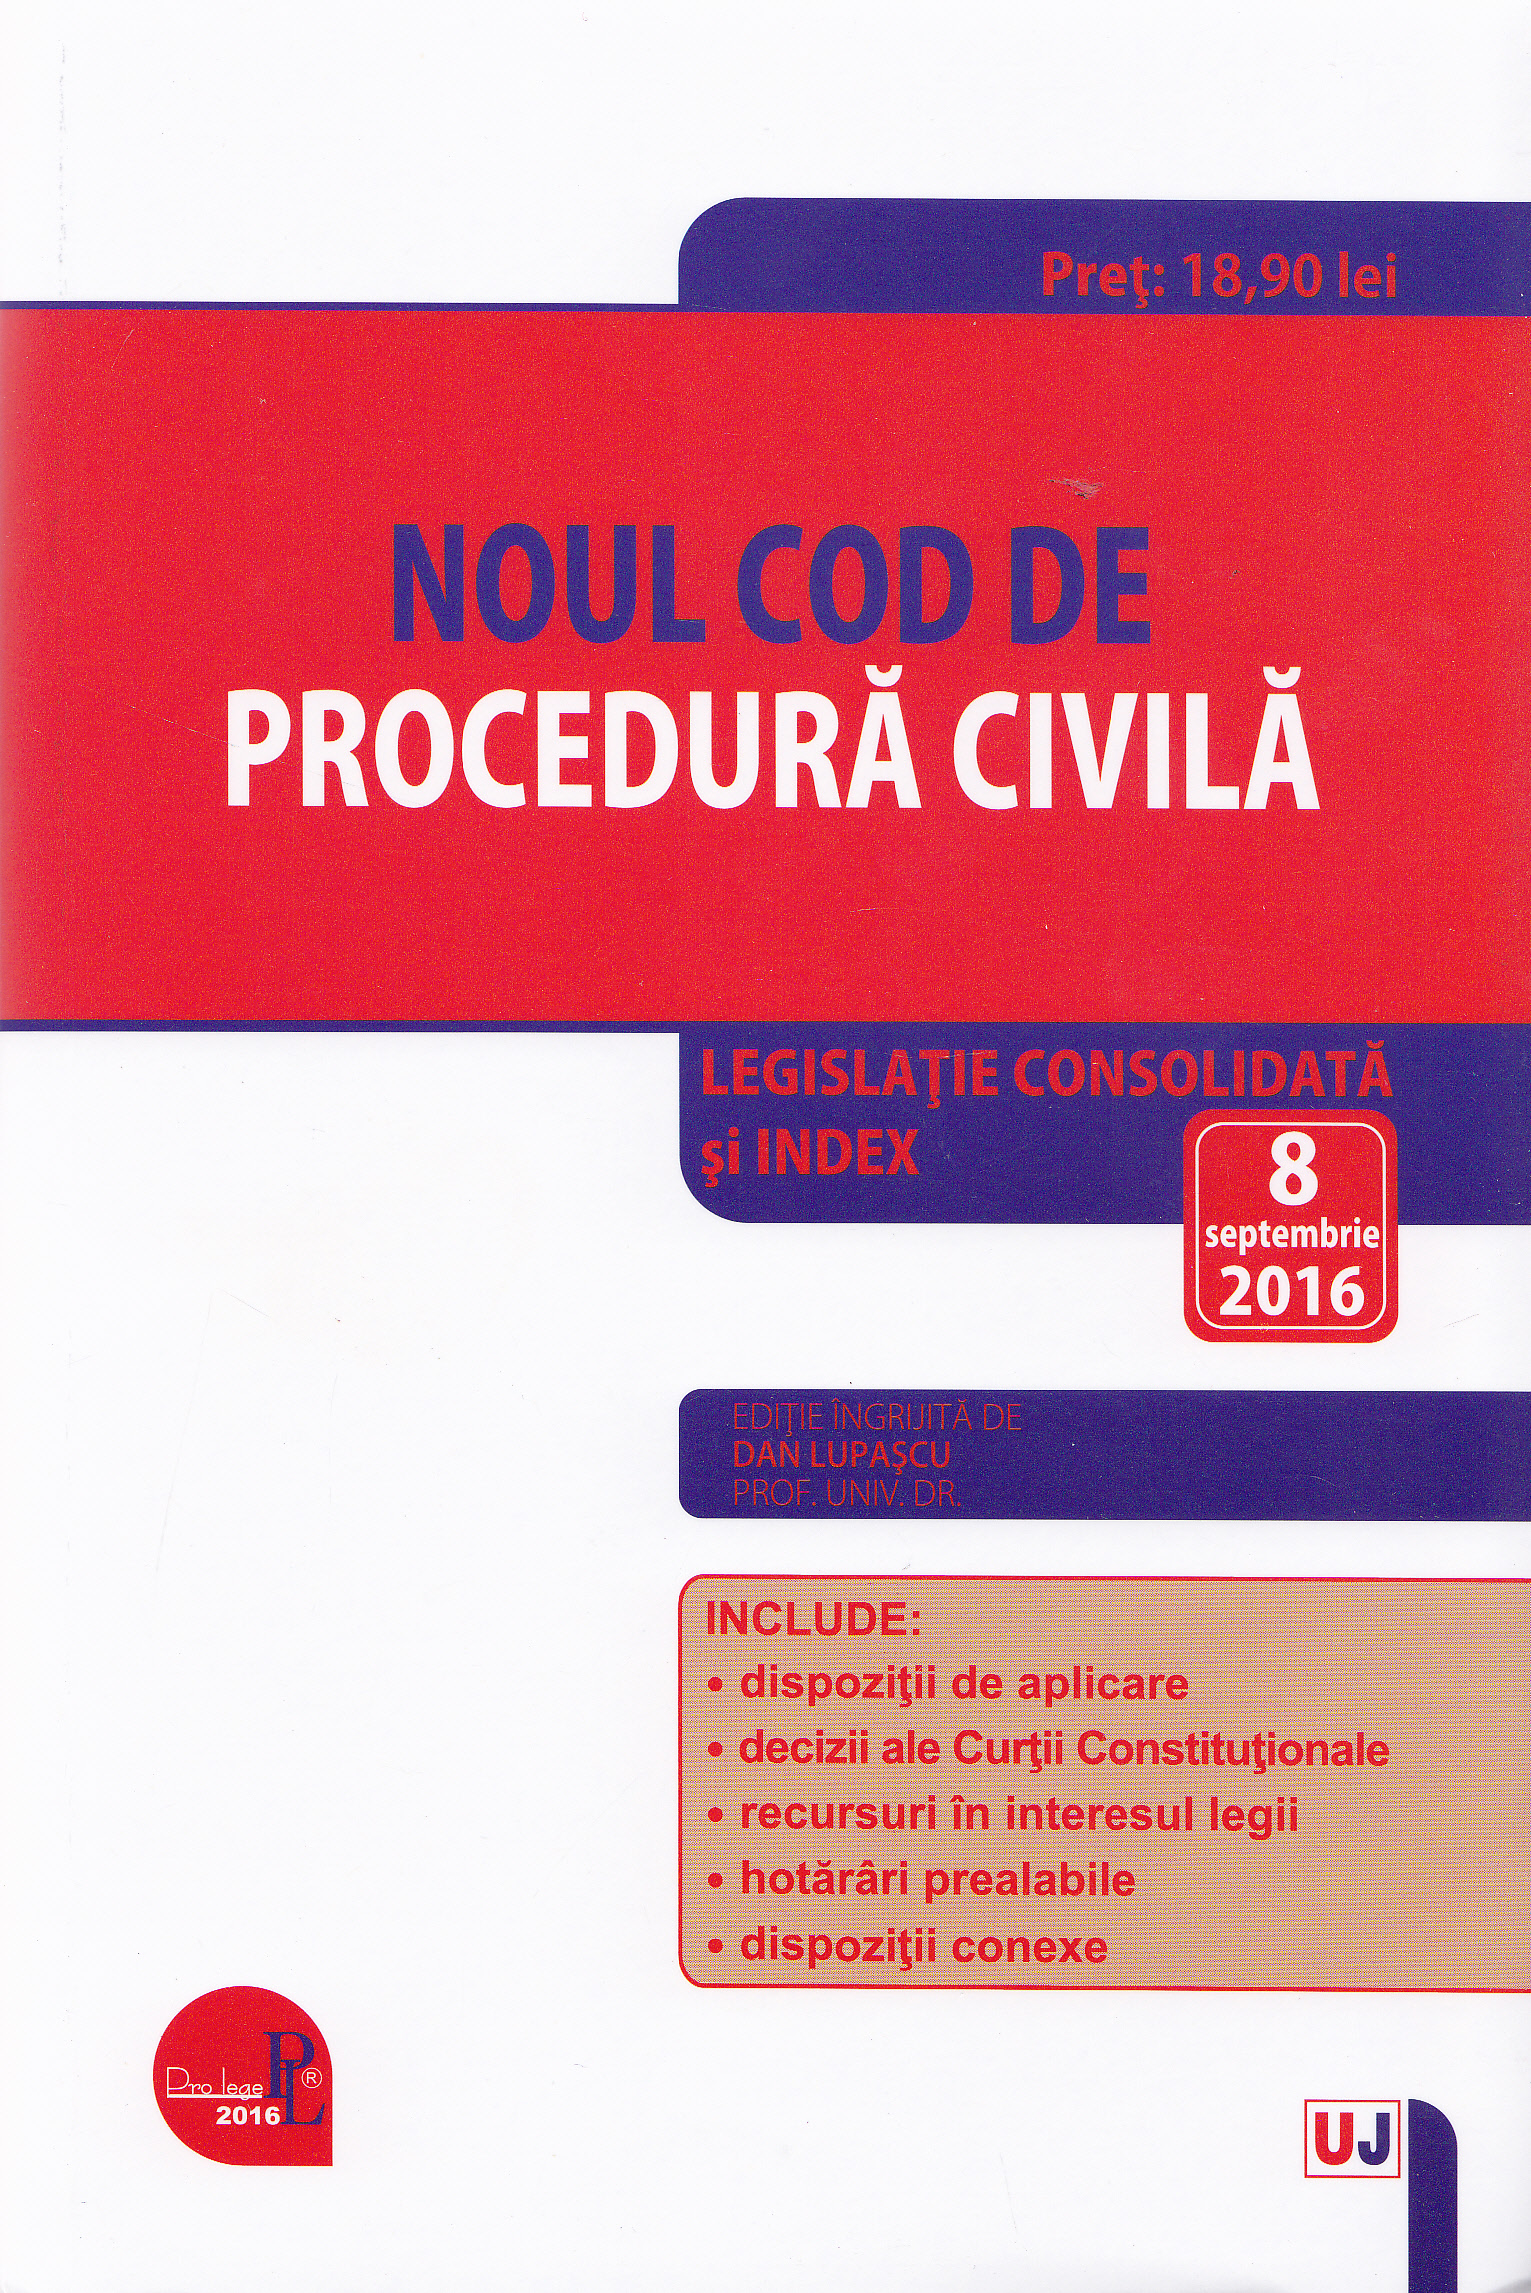 Noul Cod de procedura civila act. 8 septembrie 2016